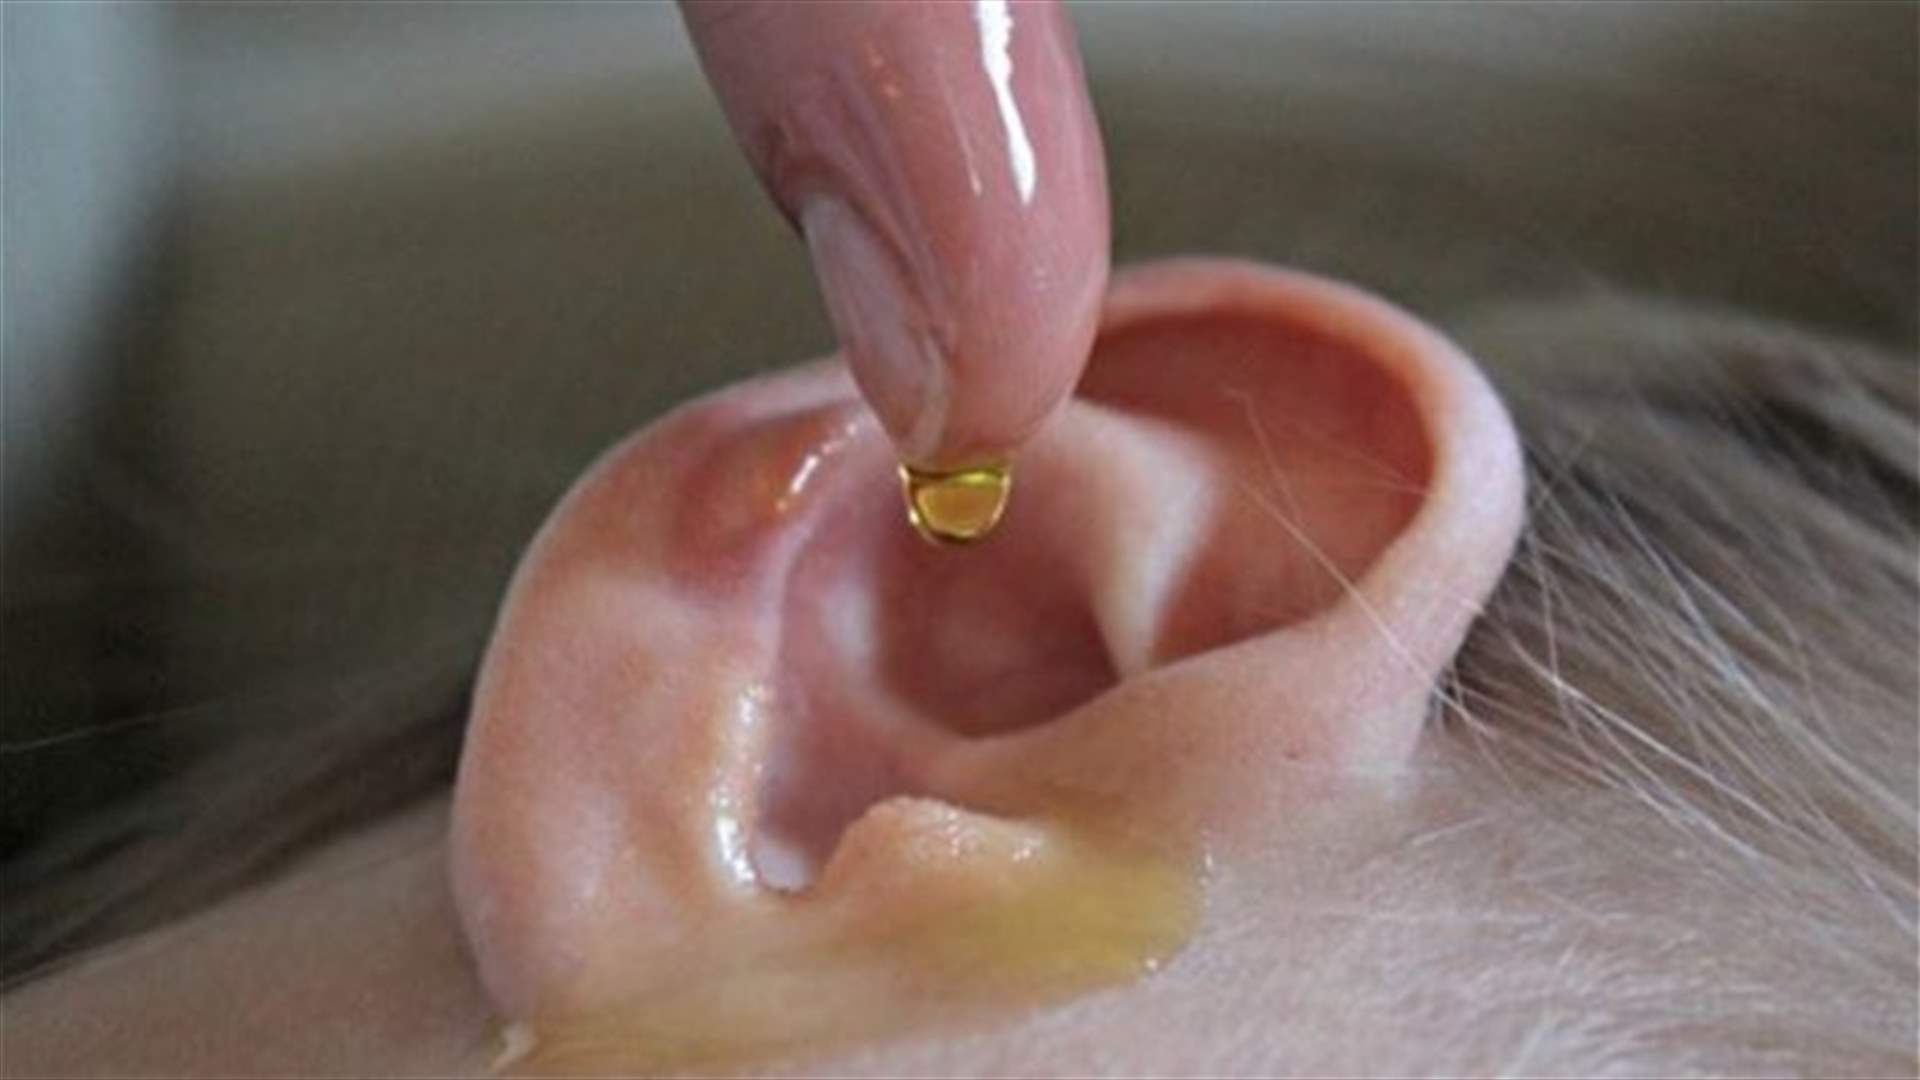 وصفة منزلية لمعالجة التهابات الأذن